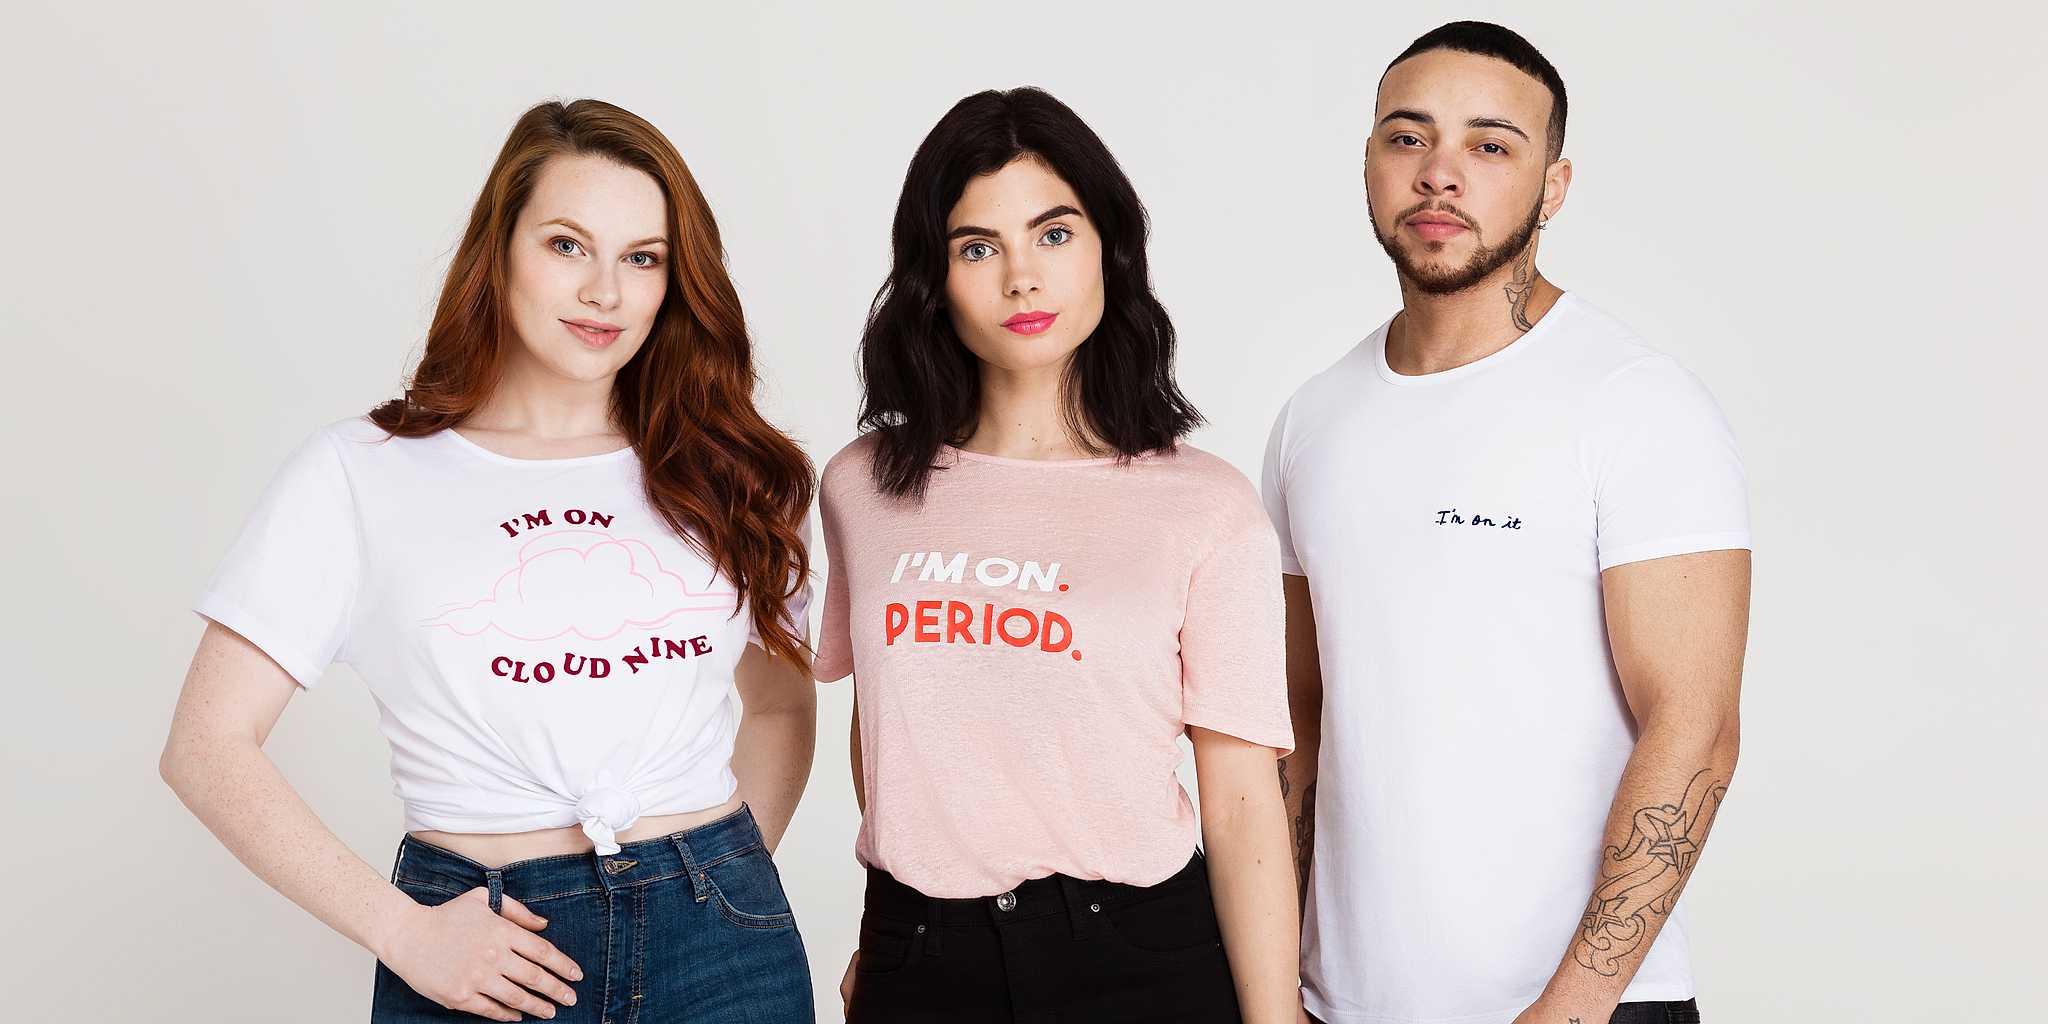 Chico transexual protagoniza campaña sobre la menstruación